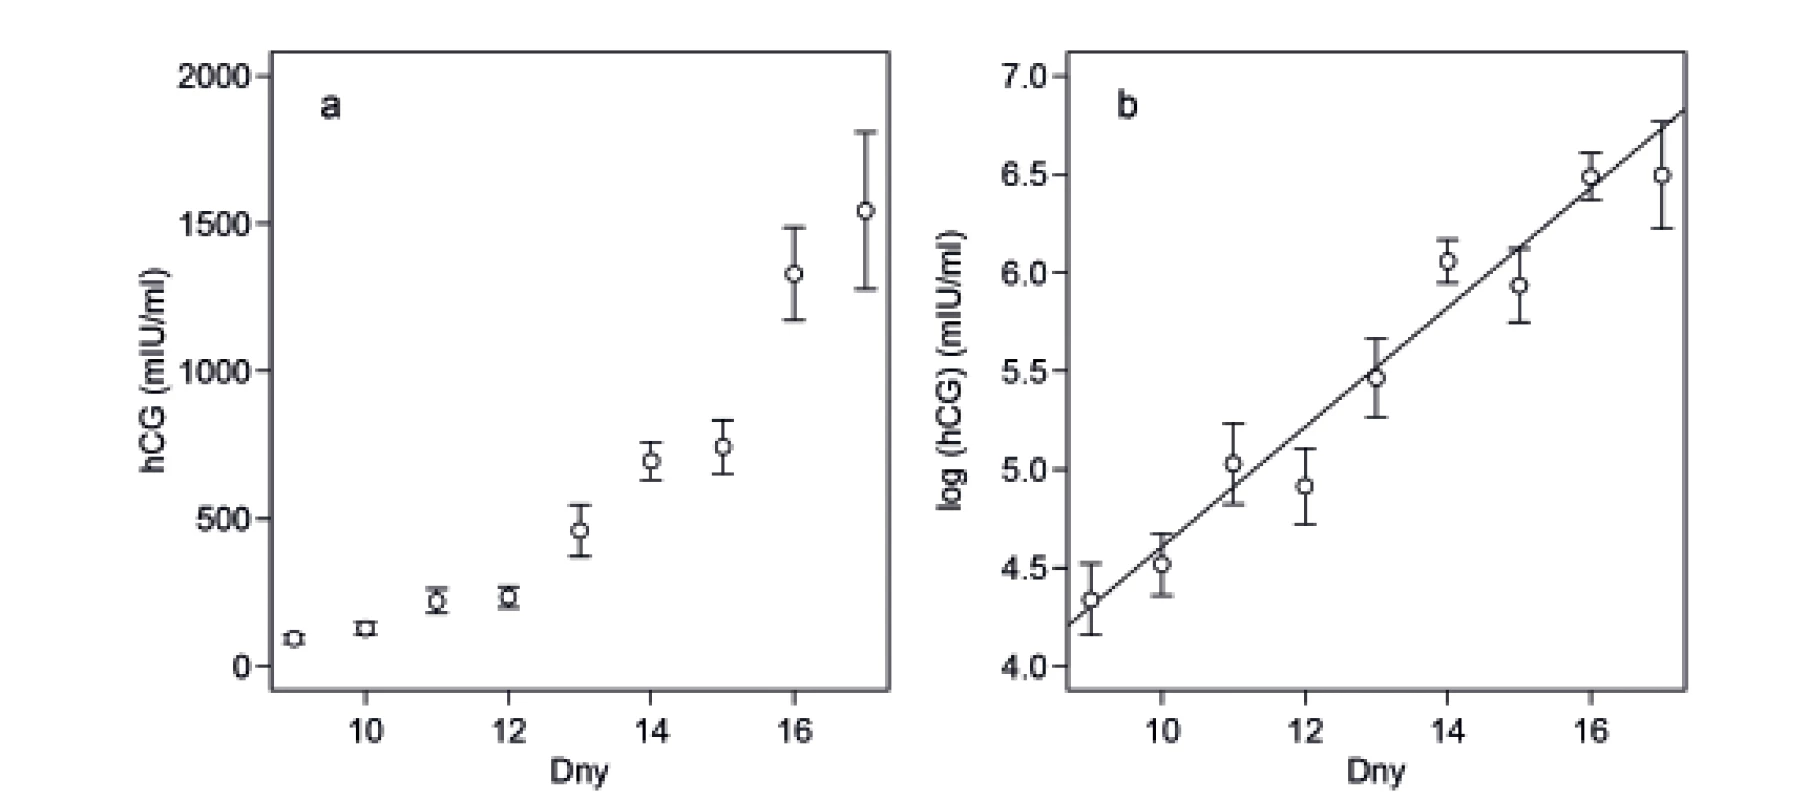 (a) Průměrné hladiny hCG v jednotlivých dnech po přenosu embryí rostou exponenciálně. S rostoucí hladinou hCG roste také
variance měřená střední chybou průměru. (b) Po logaritmické transformaci hodnot hCG je vztah lineární a variabilita je víceméně
konstantní.